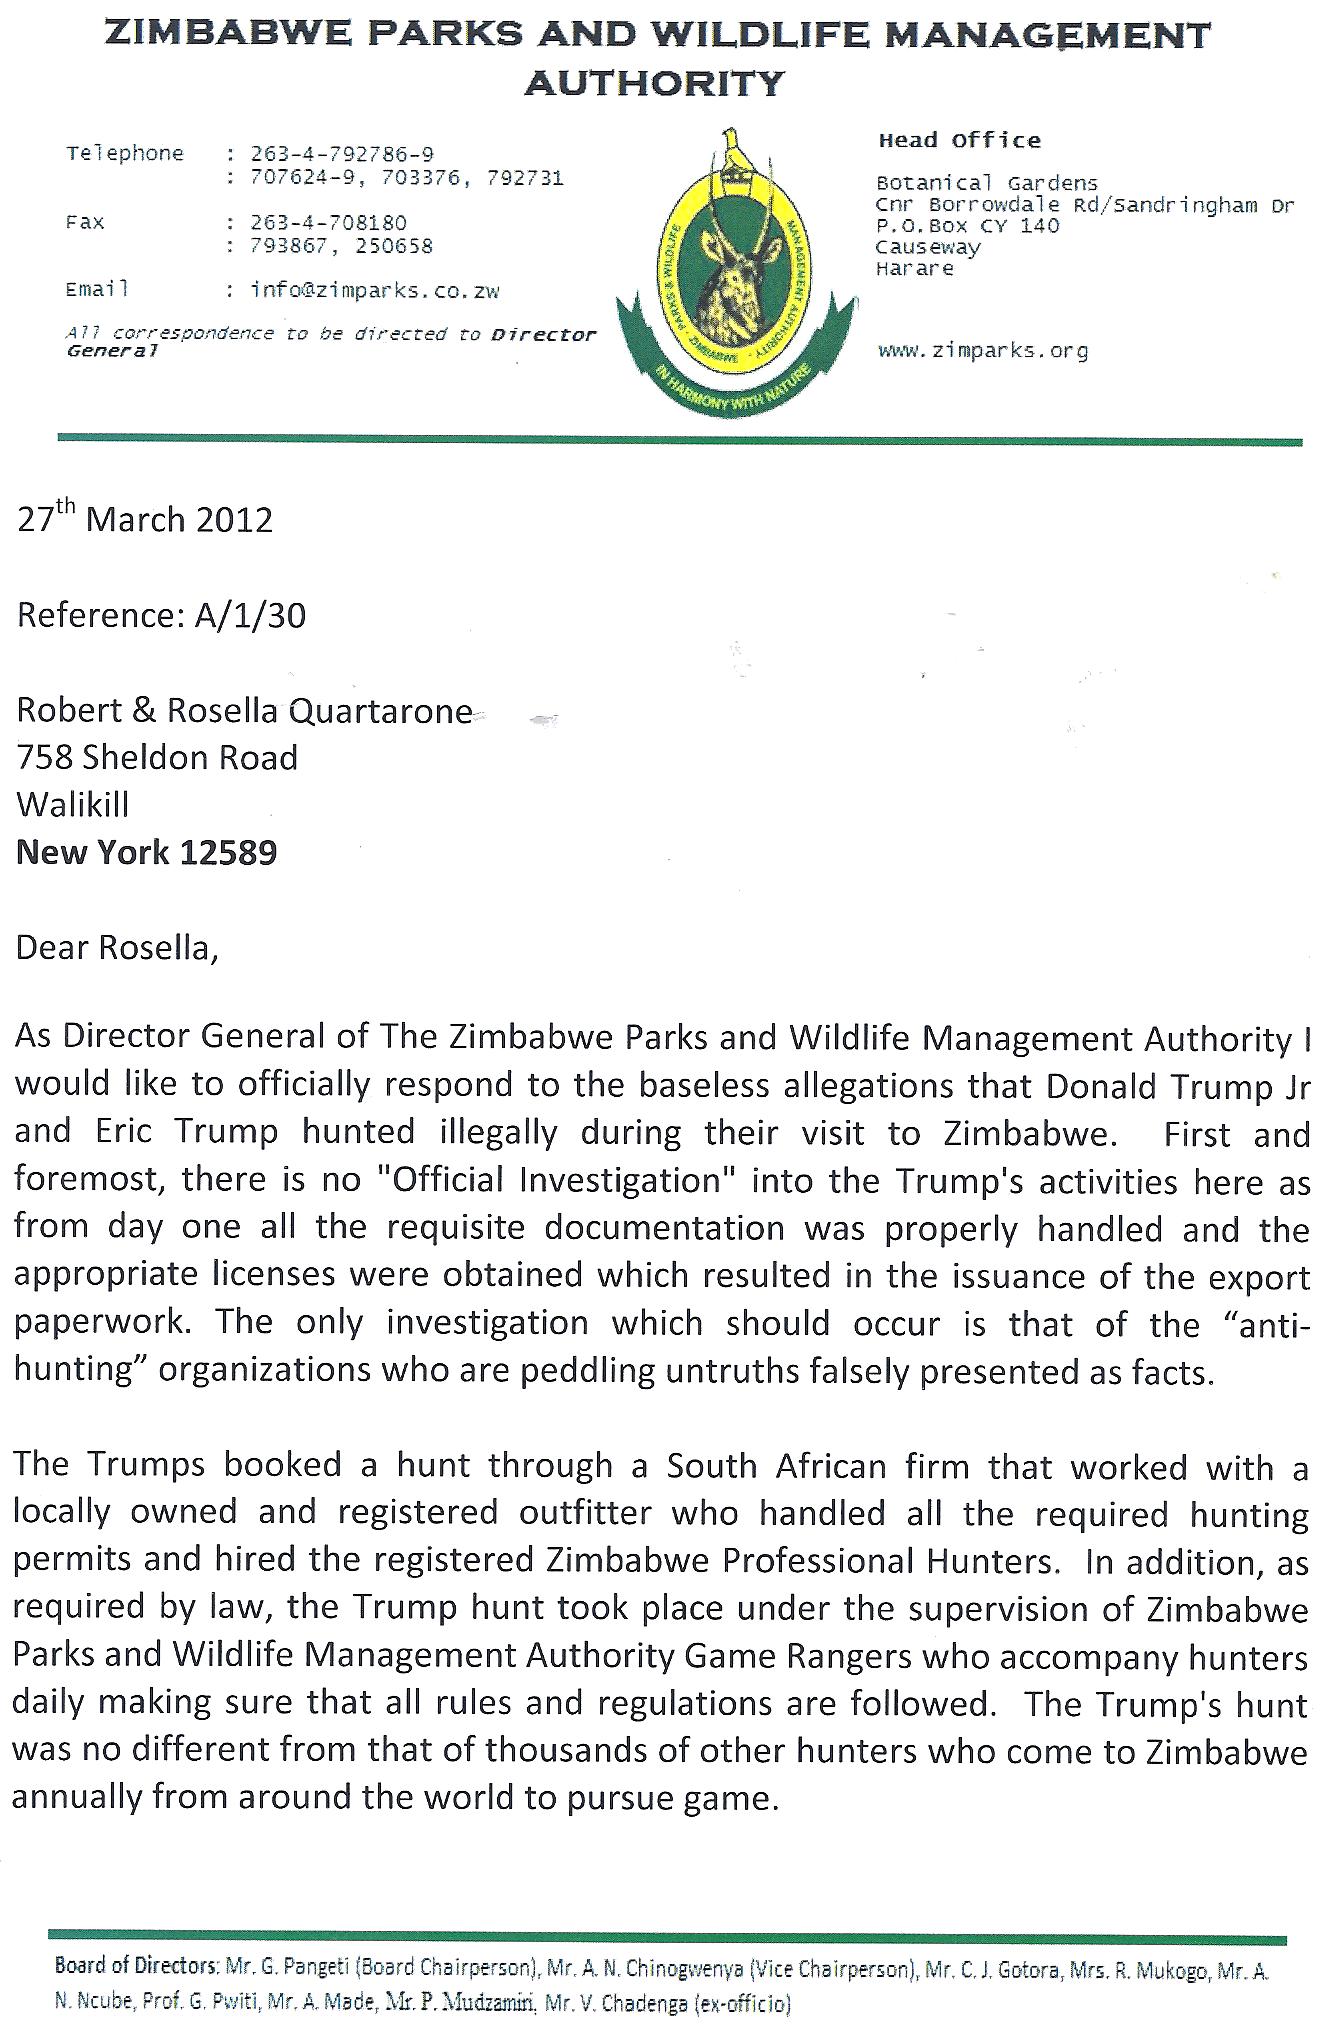 Exclusive Update: Zimbabwe Authorities Refute Allegations of Trumps' Illegal Hunt